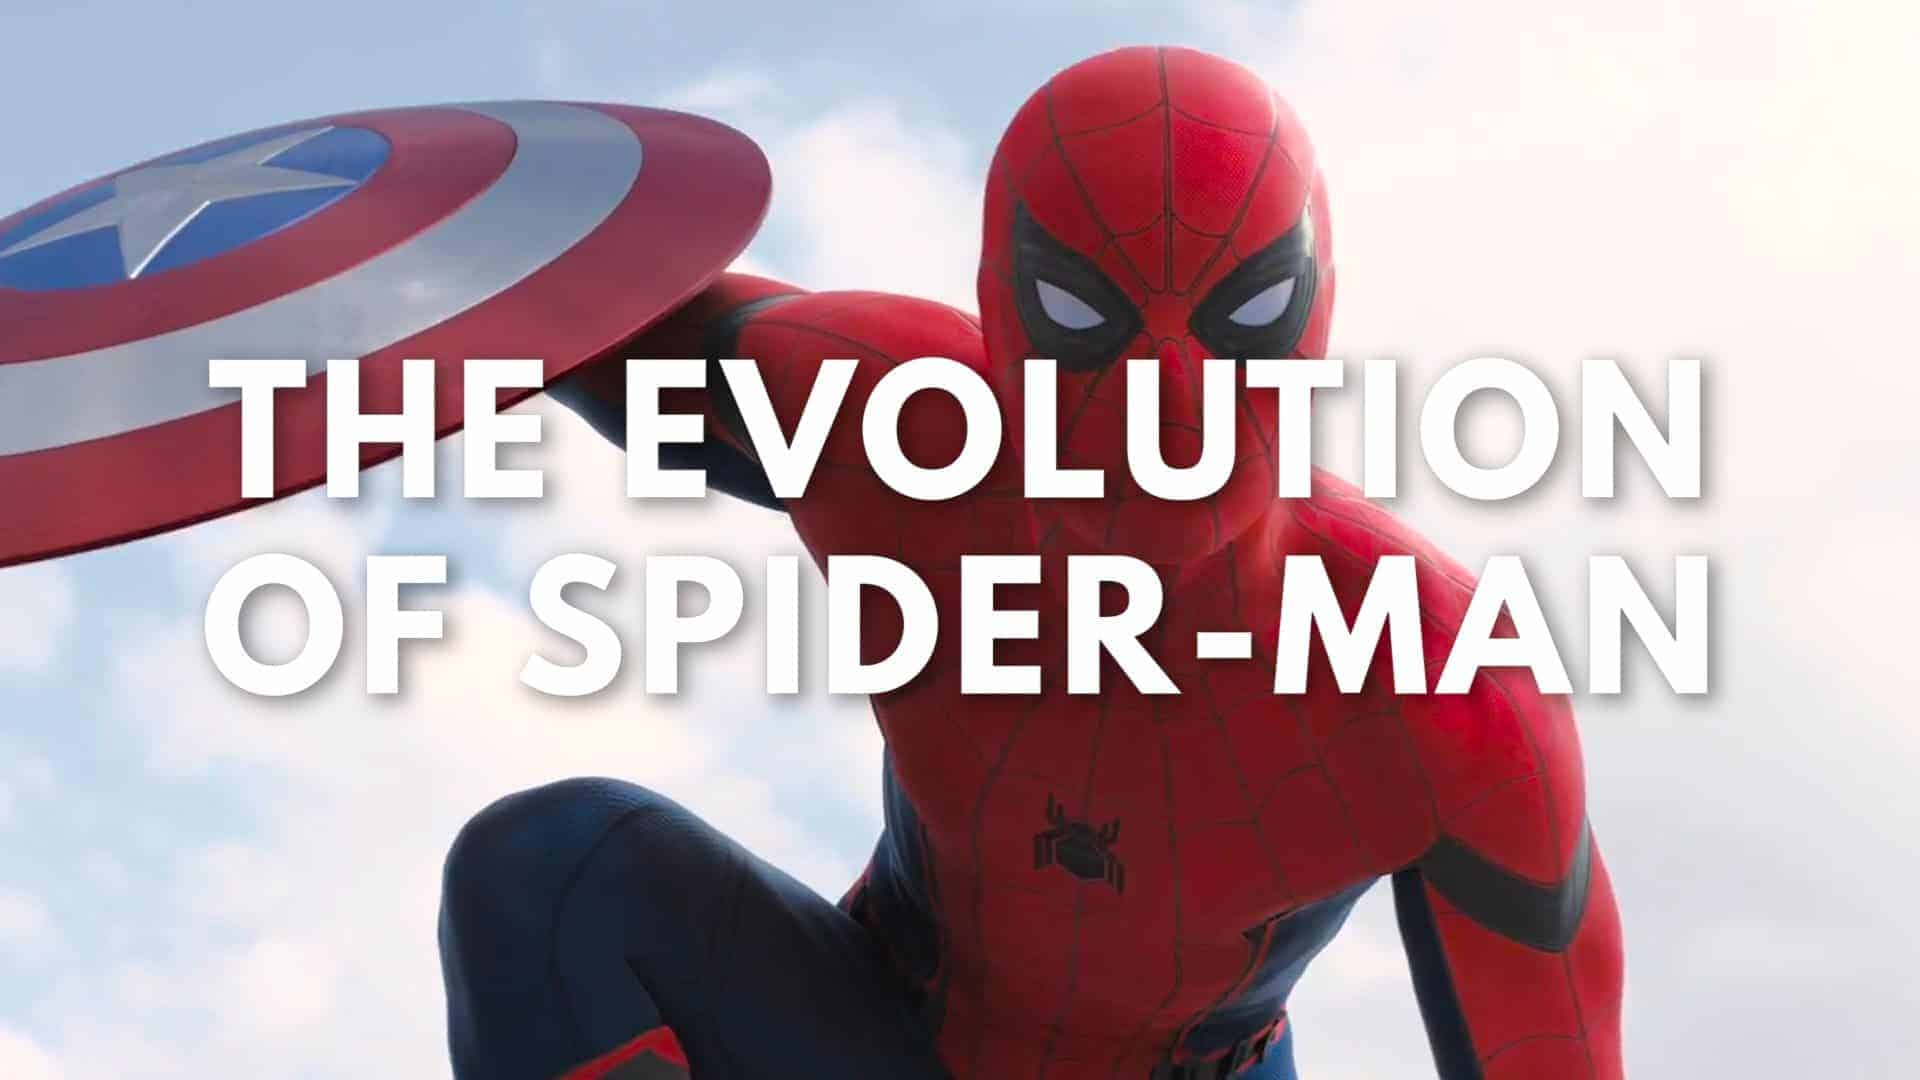 La evolución de Spider-Man en cine y televisión